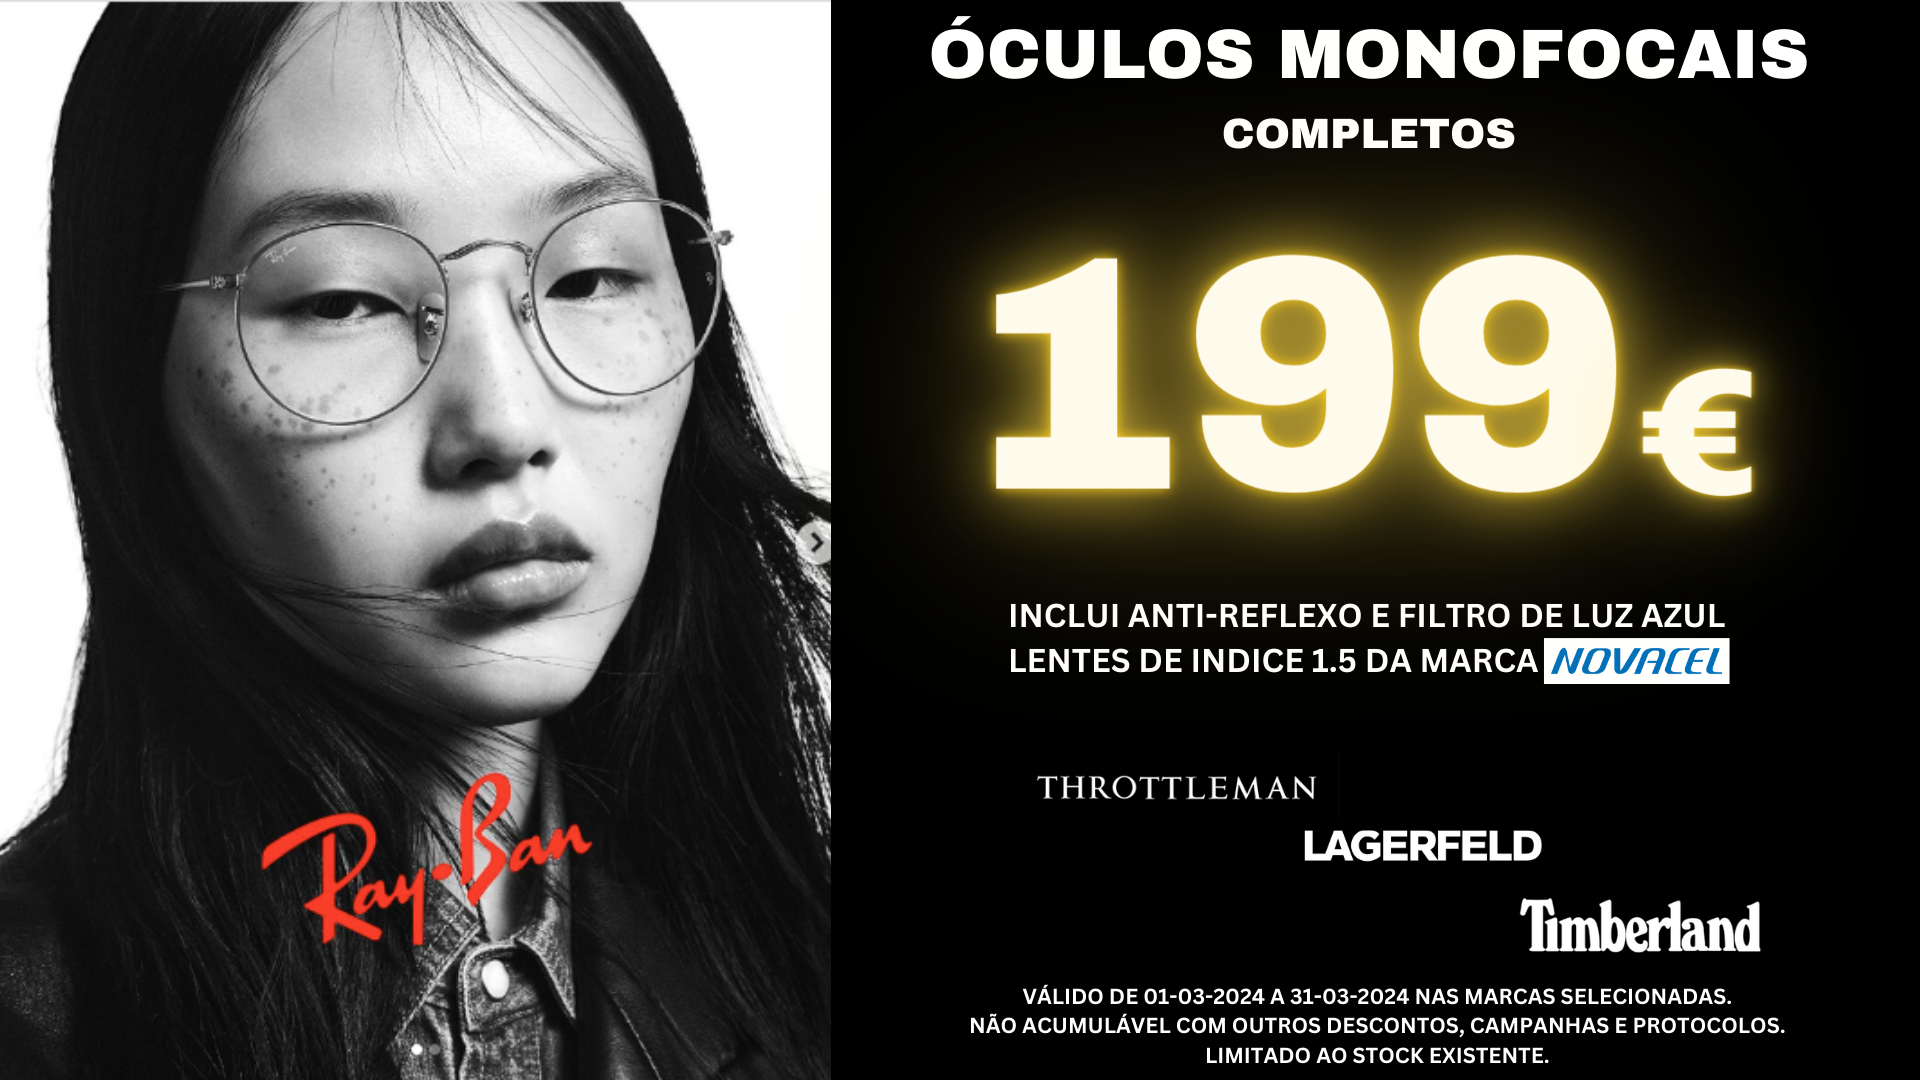 óculos monofocais desde 199€